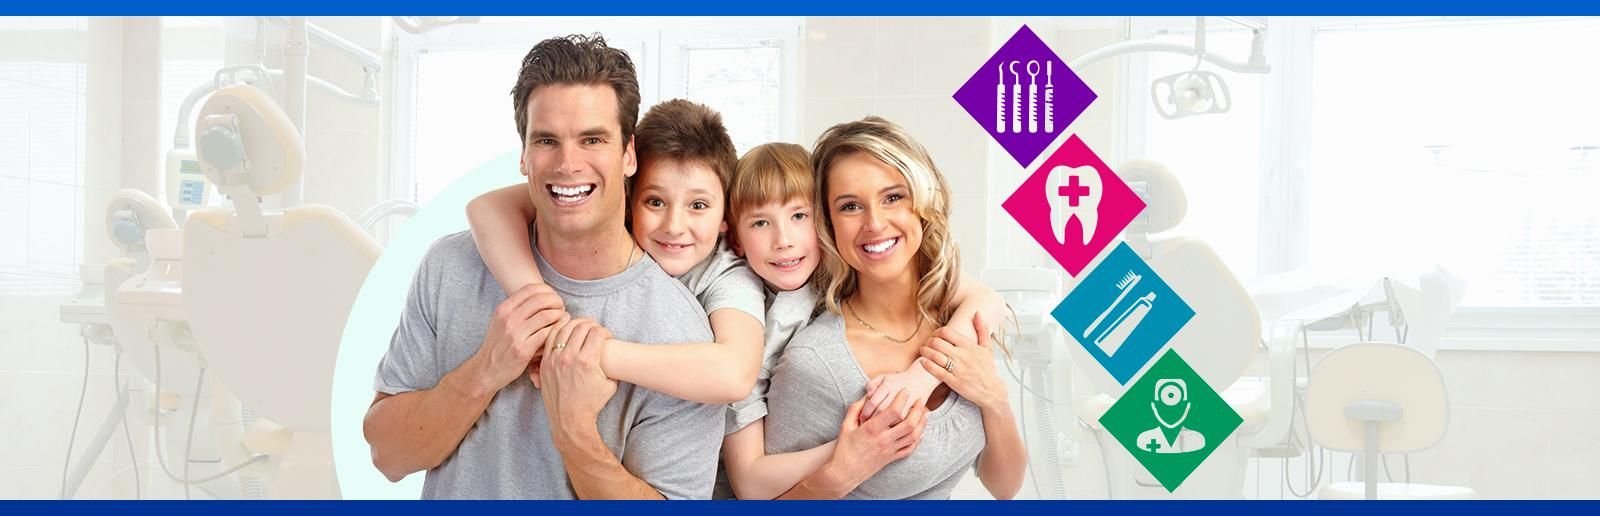 Clínica Dental Arucas familia sonriendo